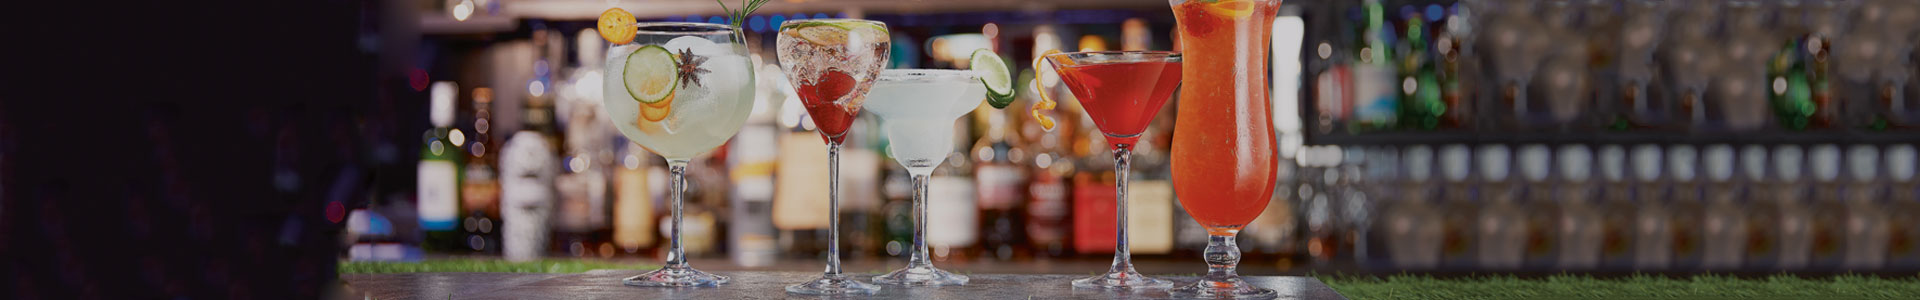 Unterschiedliche Cocktailgläser von Chef & Sommelier stehen nebeneinander auf einen Bar-Tresen und sind mit bunten Cocktails gefüllt.